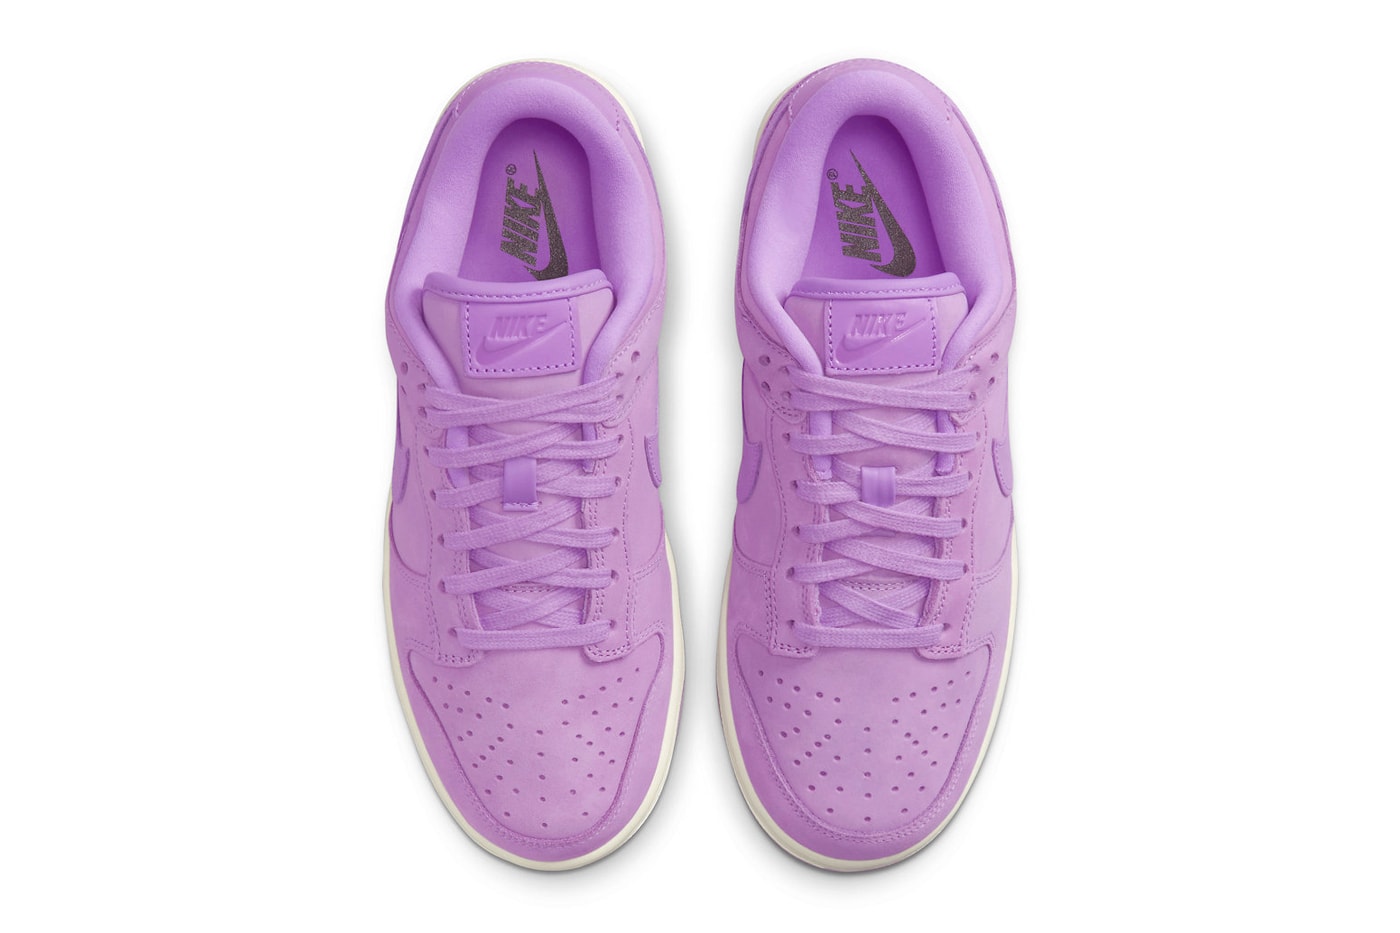 nike dunk low women sneaker pink purple